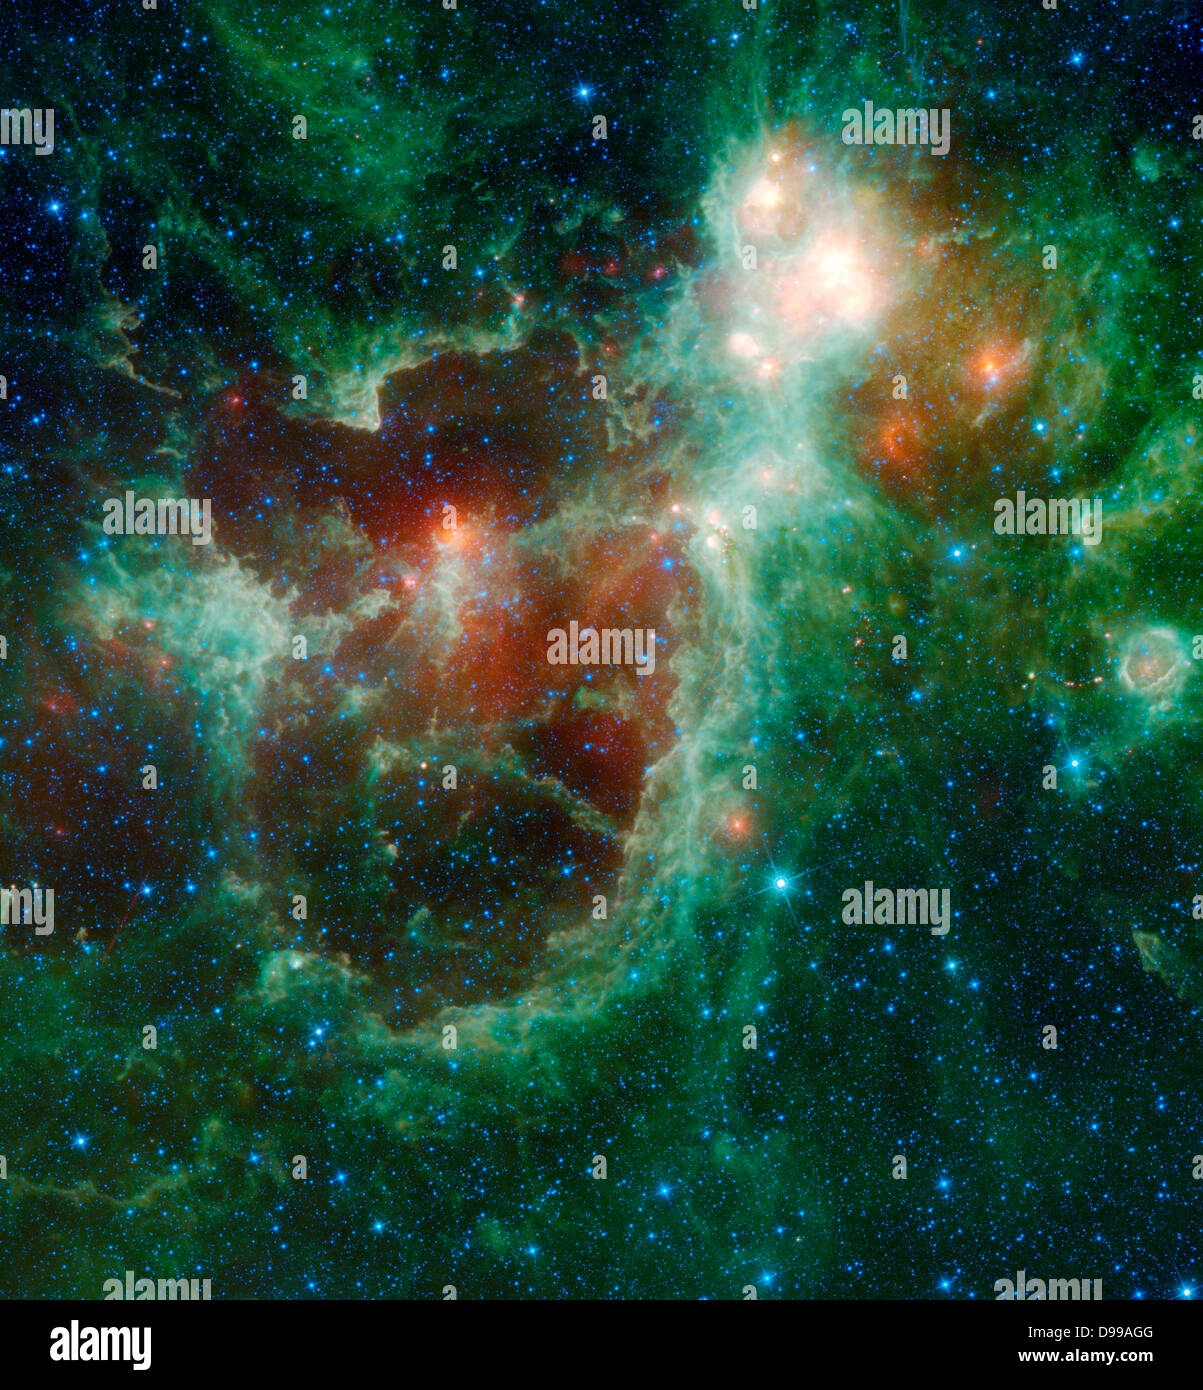 Das Herz und die Seele Nebel sind in diesem Infrarot Mosaik von Nasas Weise gesehen. Im Sternbild Cassiopeia, über 6.000 Licht von der Erde entfernt, das Herz und die Seele Nebel bilden eine große Sterne bilden Komplexe, die Teil des Perseus spiralarm unserer Milchstraße. Der Nebel auf der rechten Seite ist das Herz, und auf der linken Seite ist die Seele Nebel. Stockfoto